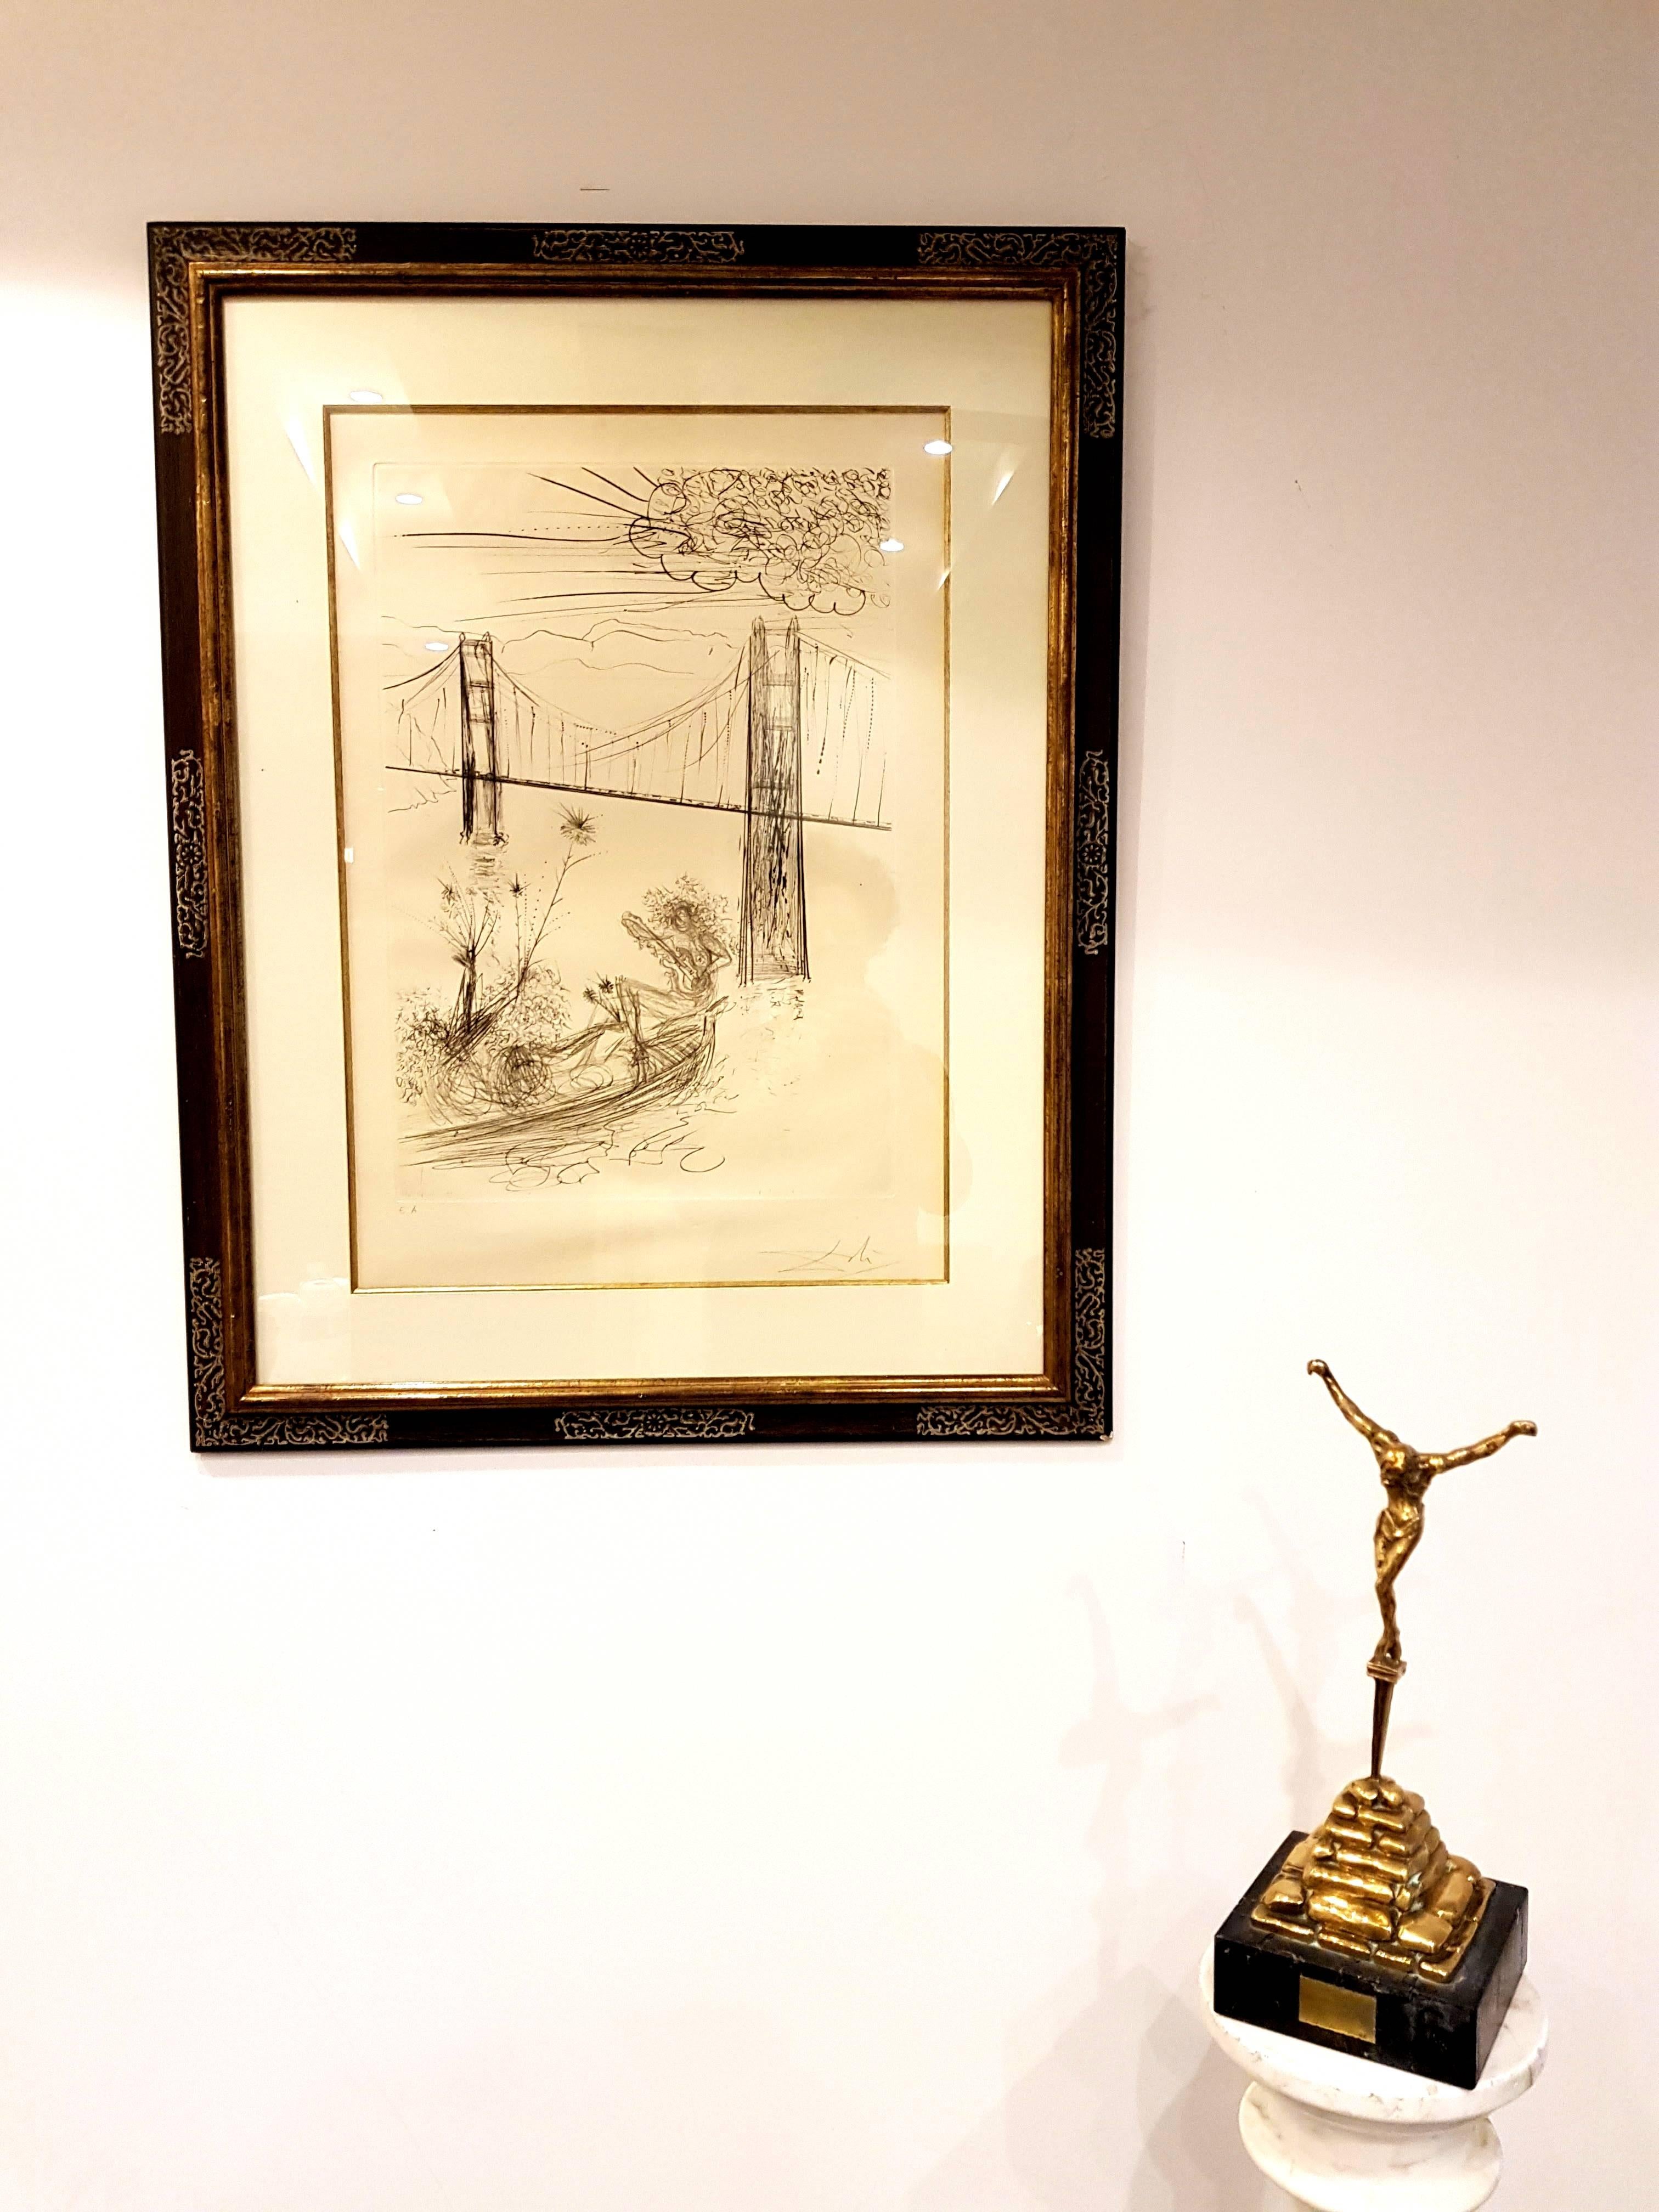 Salvador Dali - Golden Gate Bridge - Original Handsigned Etching - Print by Salvador Dalí